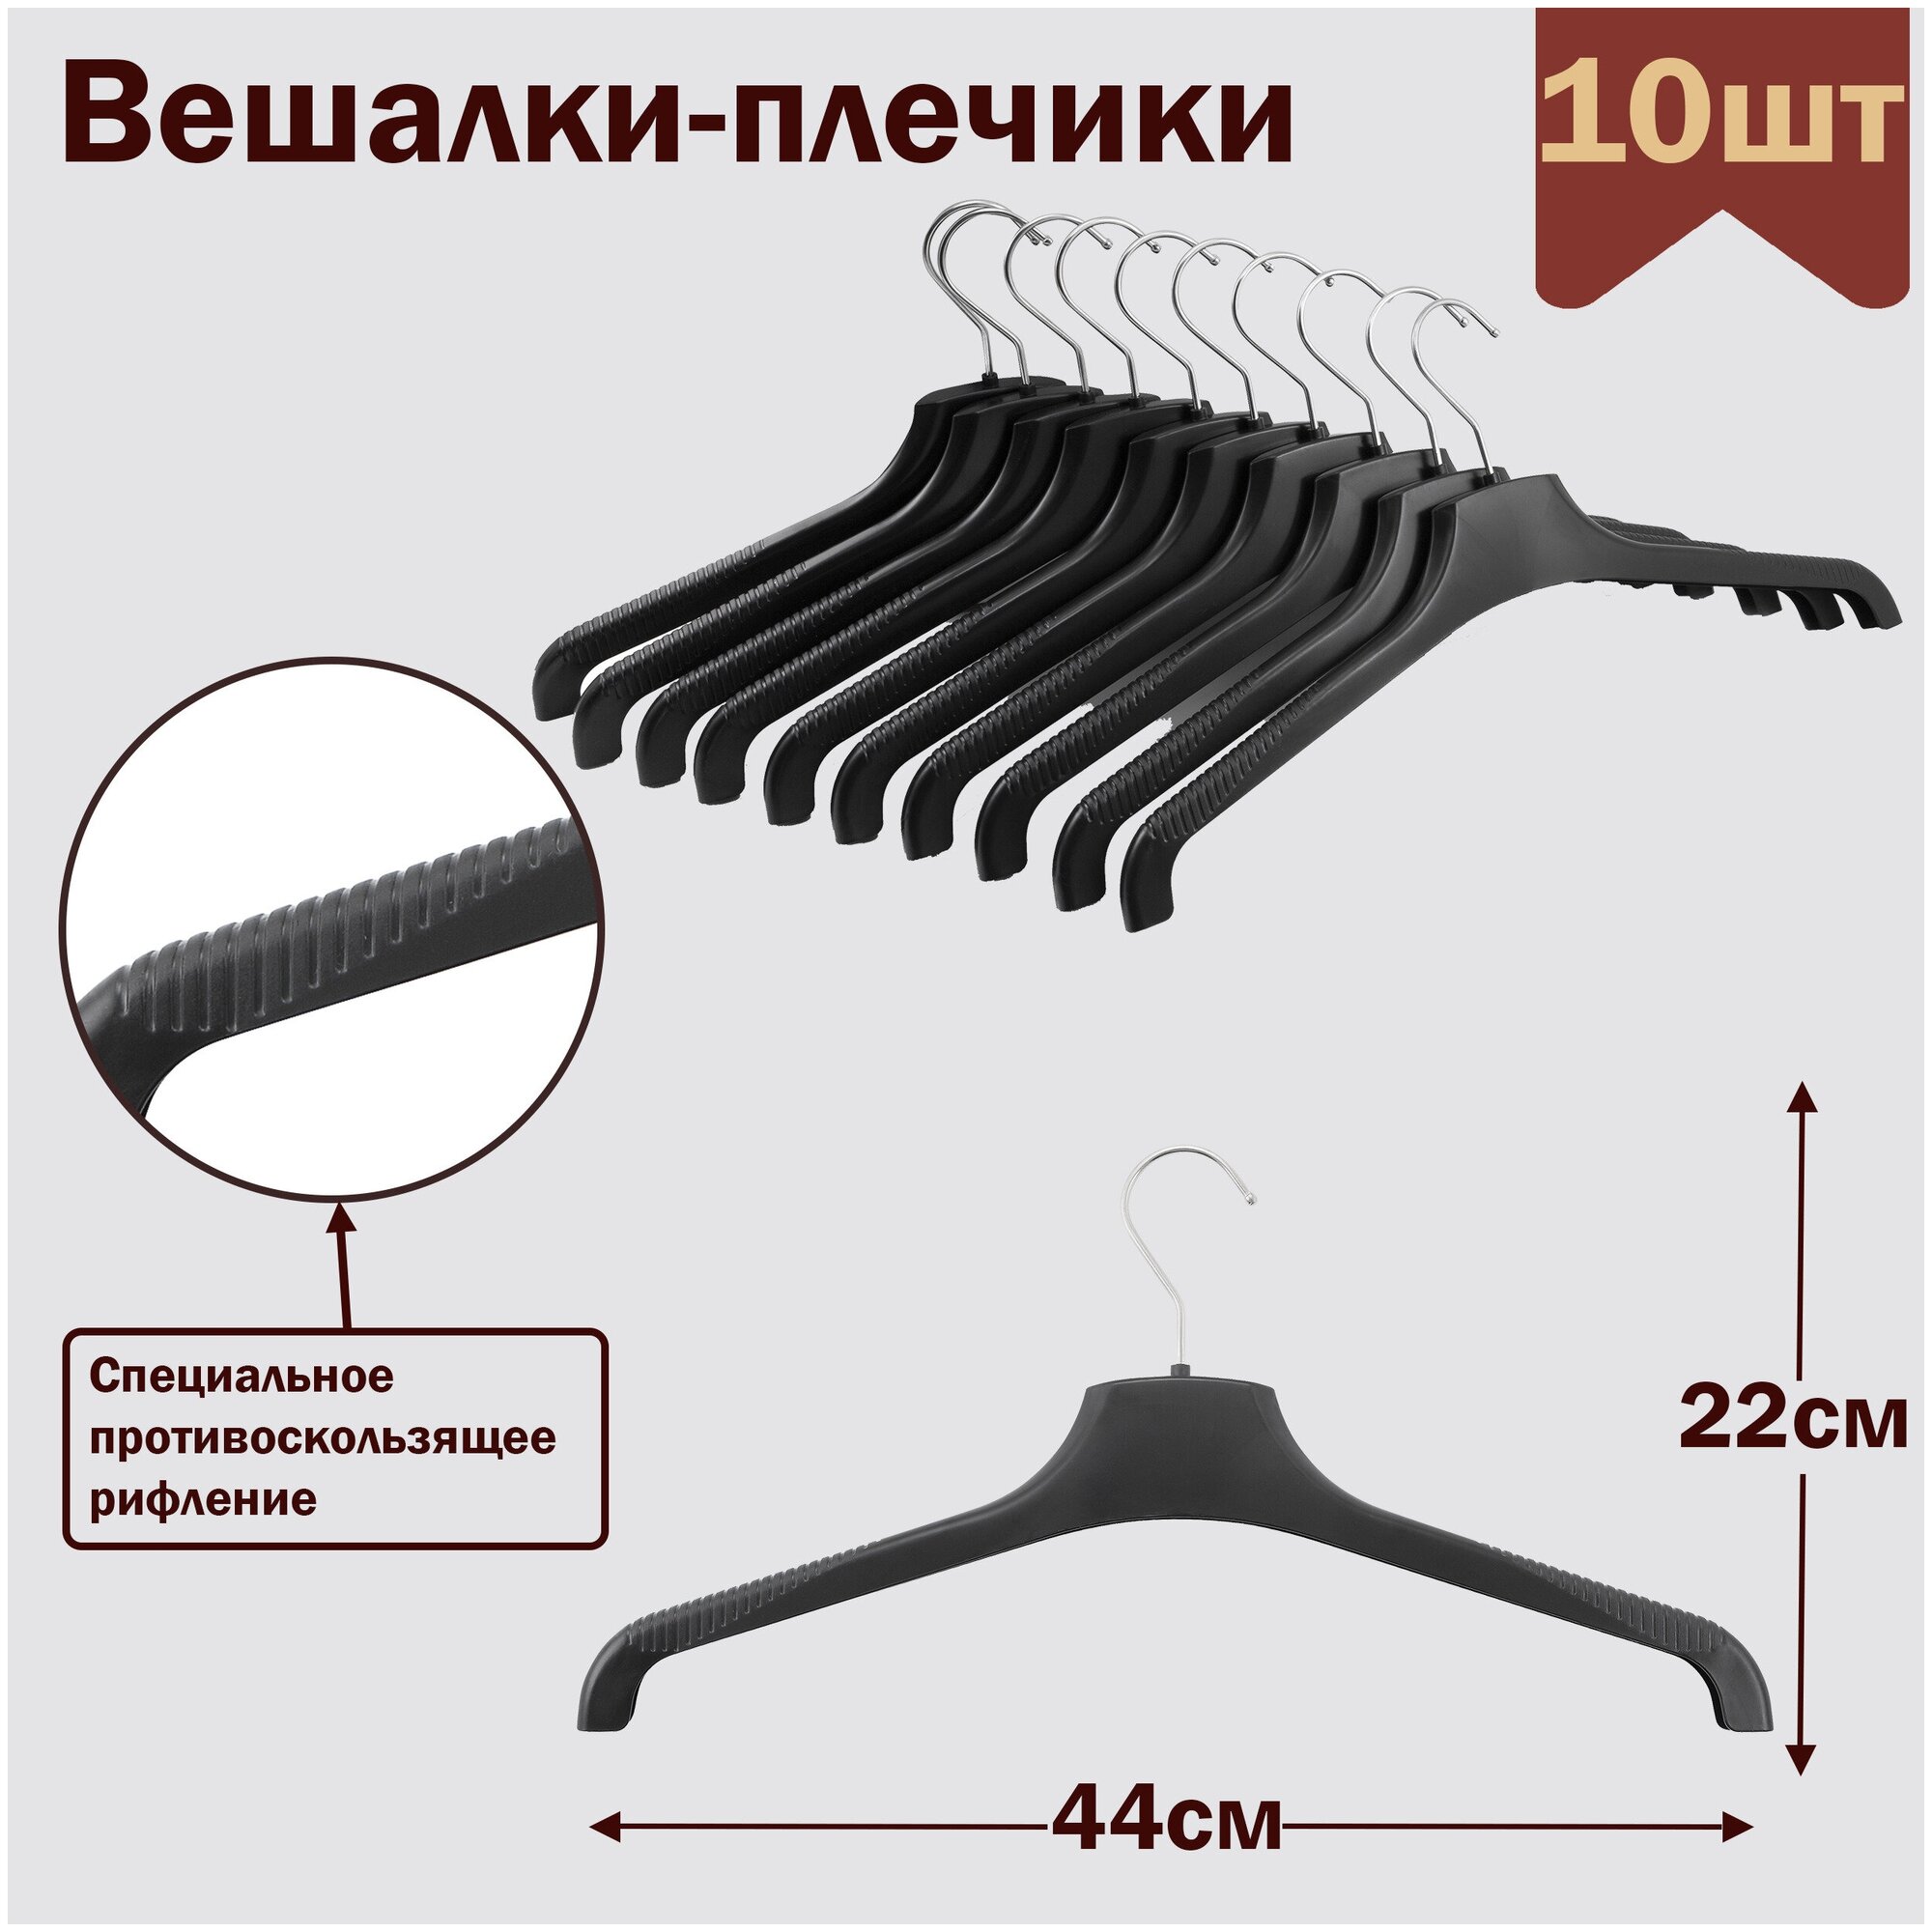 Вешалки-плечики для одежды пластиковые 44 см цвет черный комплект 10 штук